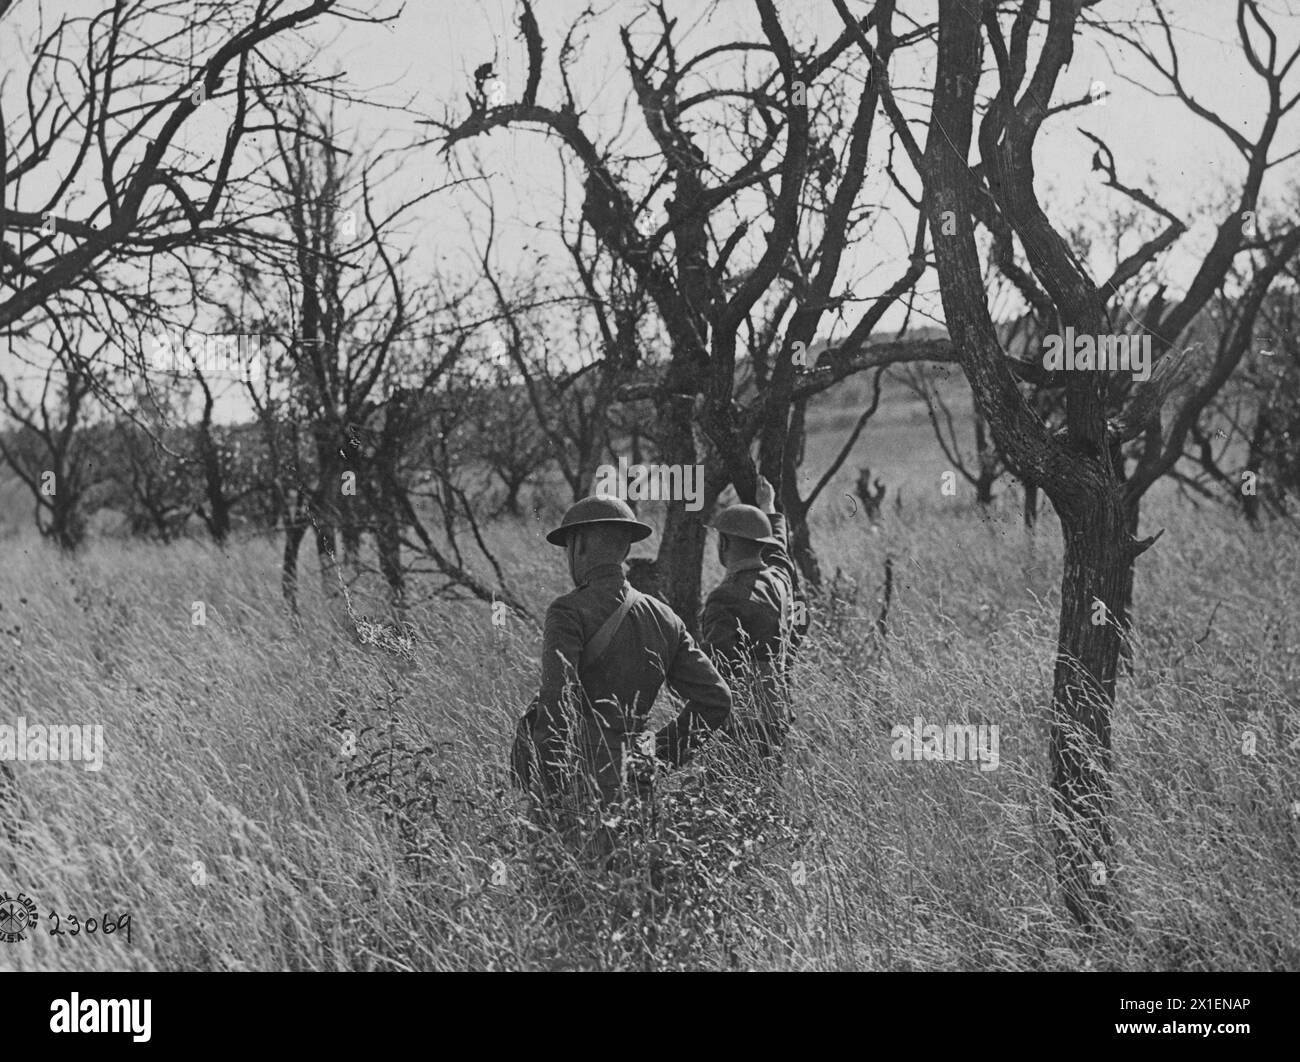 Foto della prima guerra mondiale: I soldati americani camminano attraverso un meleto degradato durante la loro avanzata nella regione francese delle Argonne, a nord-ovest di Verdun, CA. 1918 Foto Stock